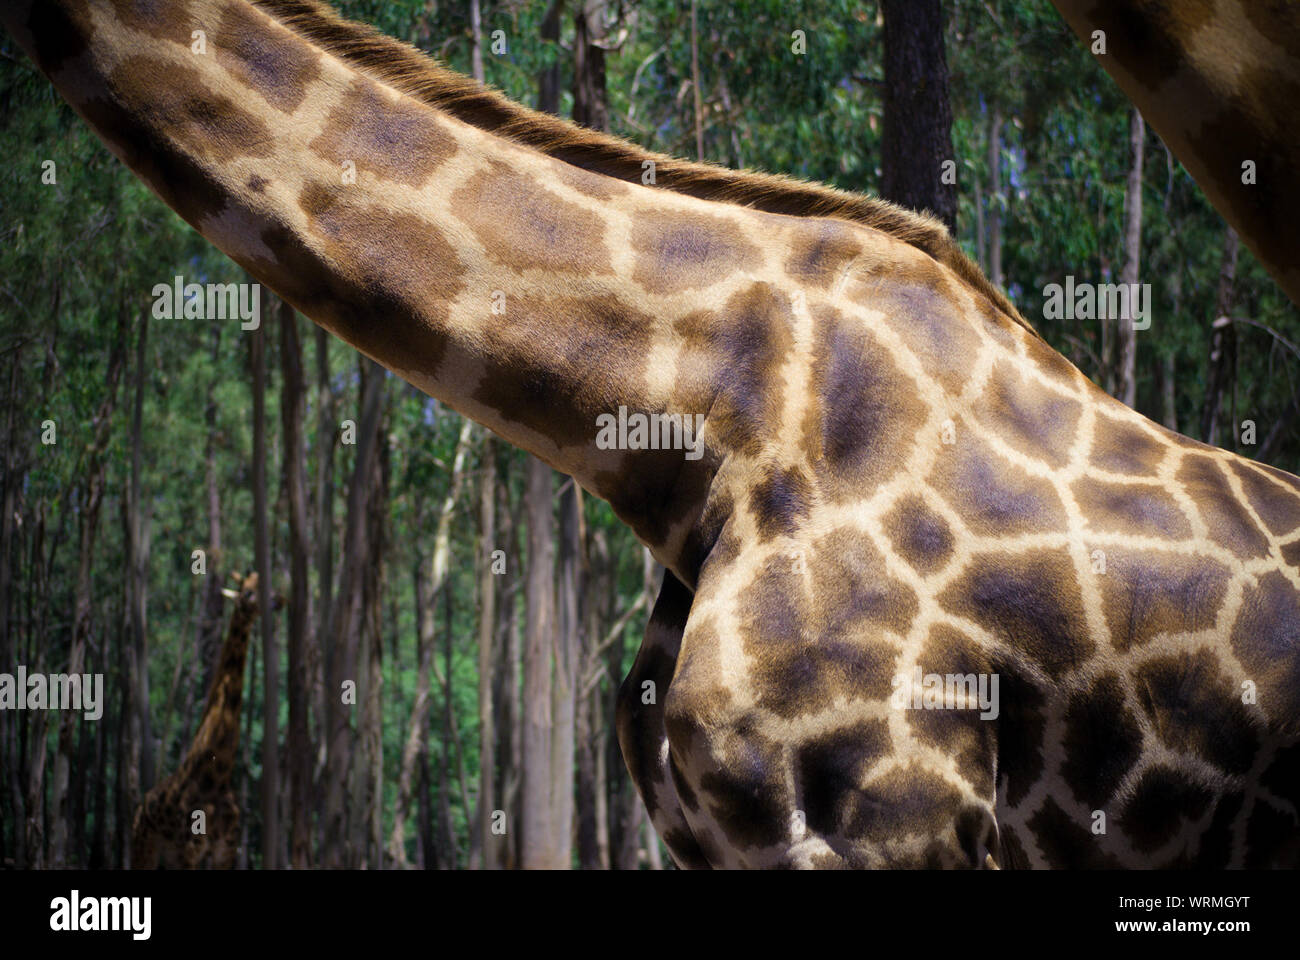 La sección intermedia de la jirafa Foto de stock